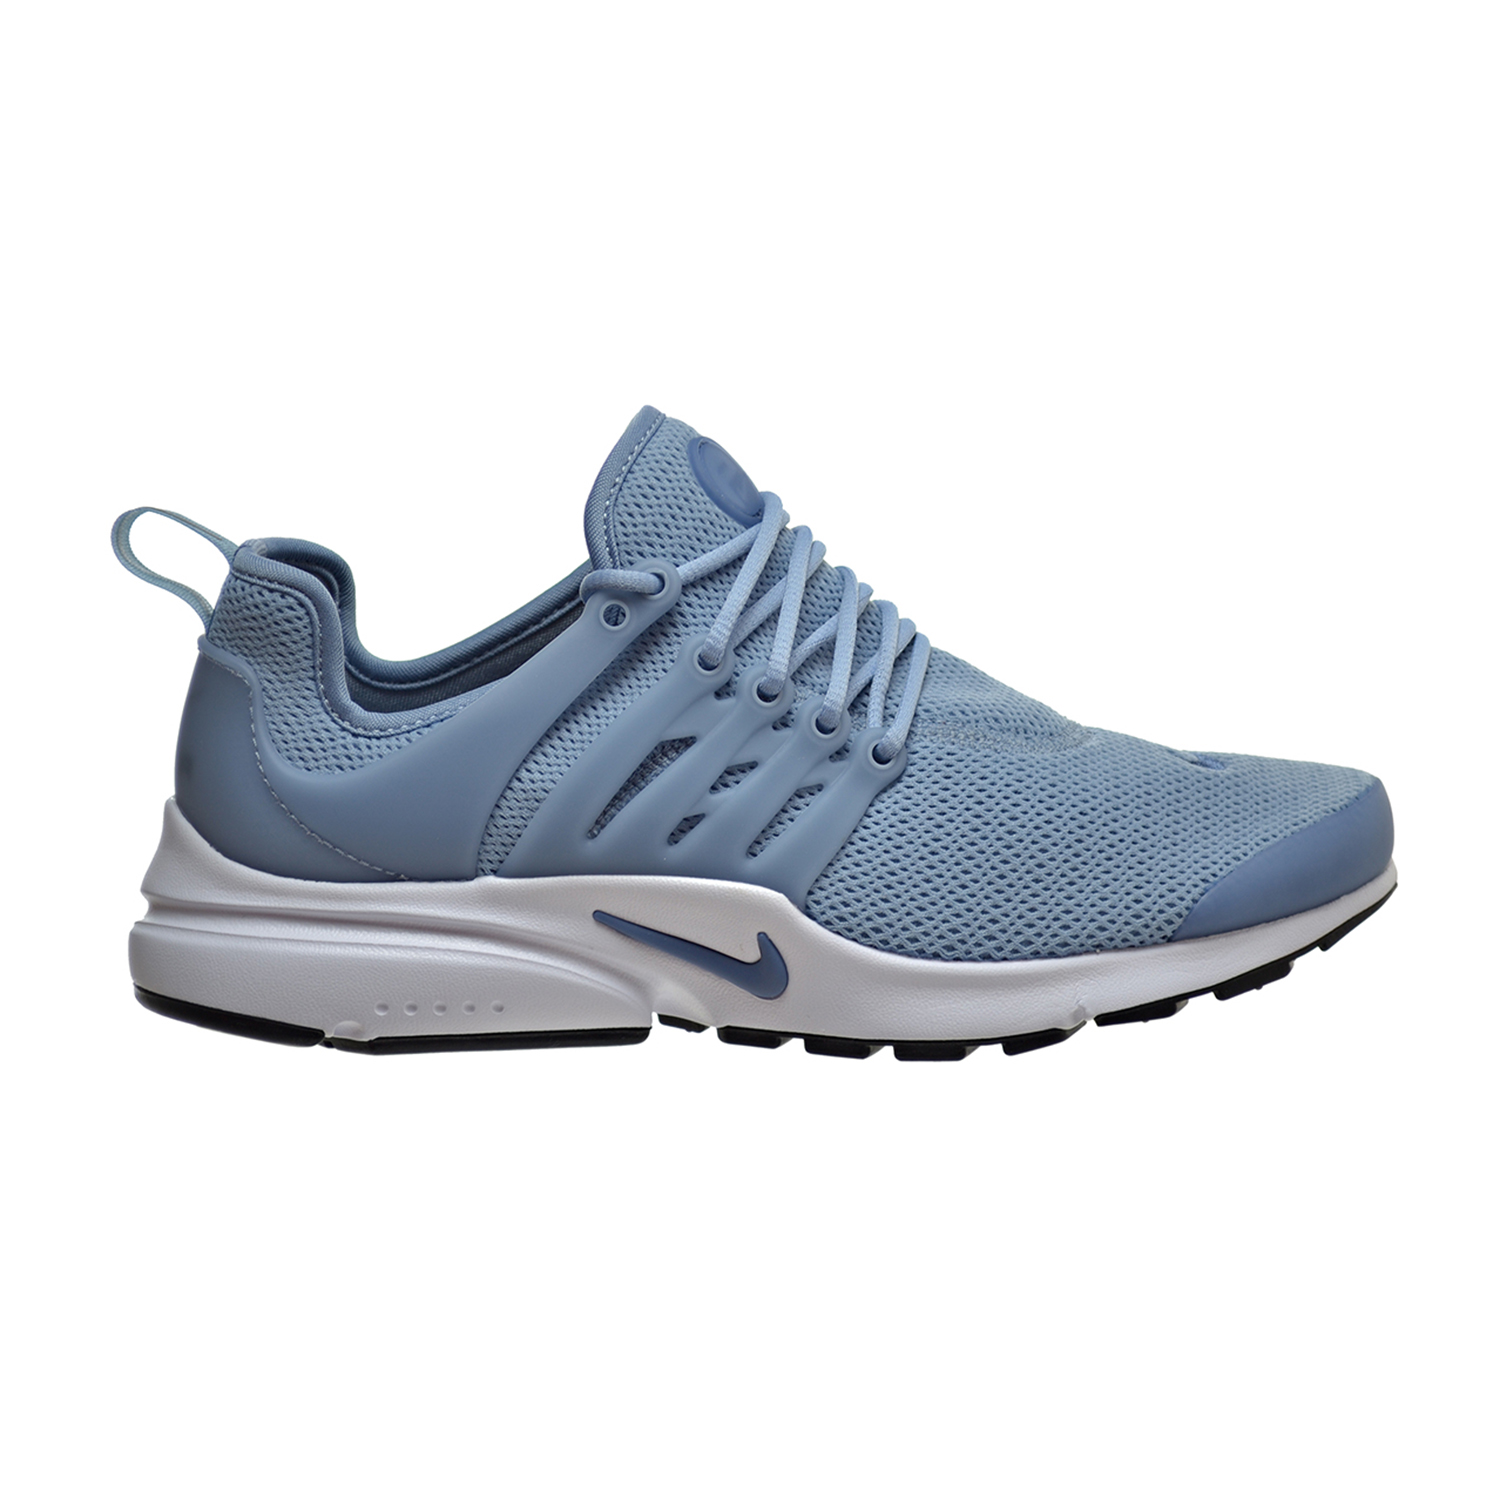 Nike Air Presto Women's Shoes Blue Grey/Ocean Fog/Black 878068-400 | eBay